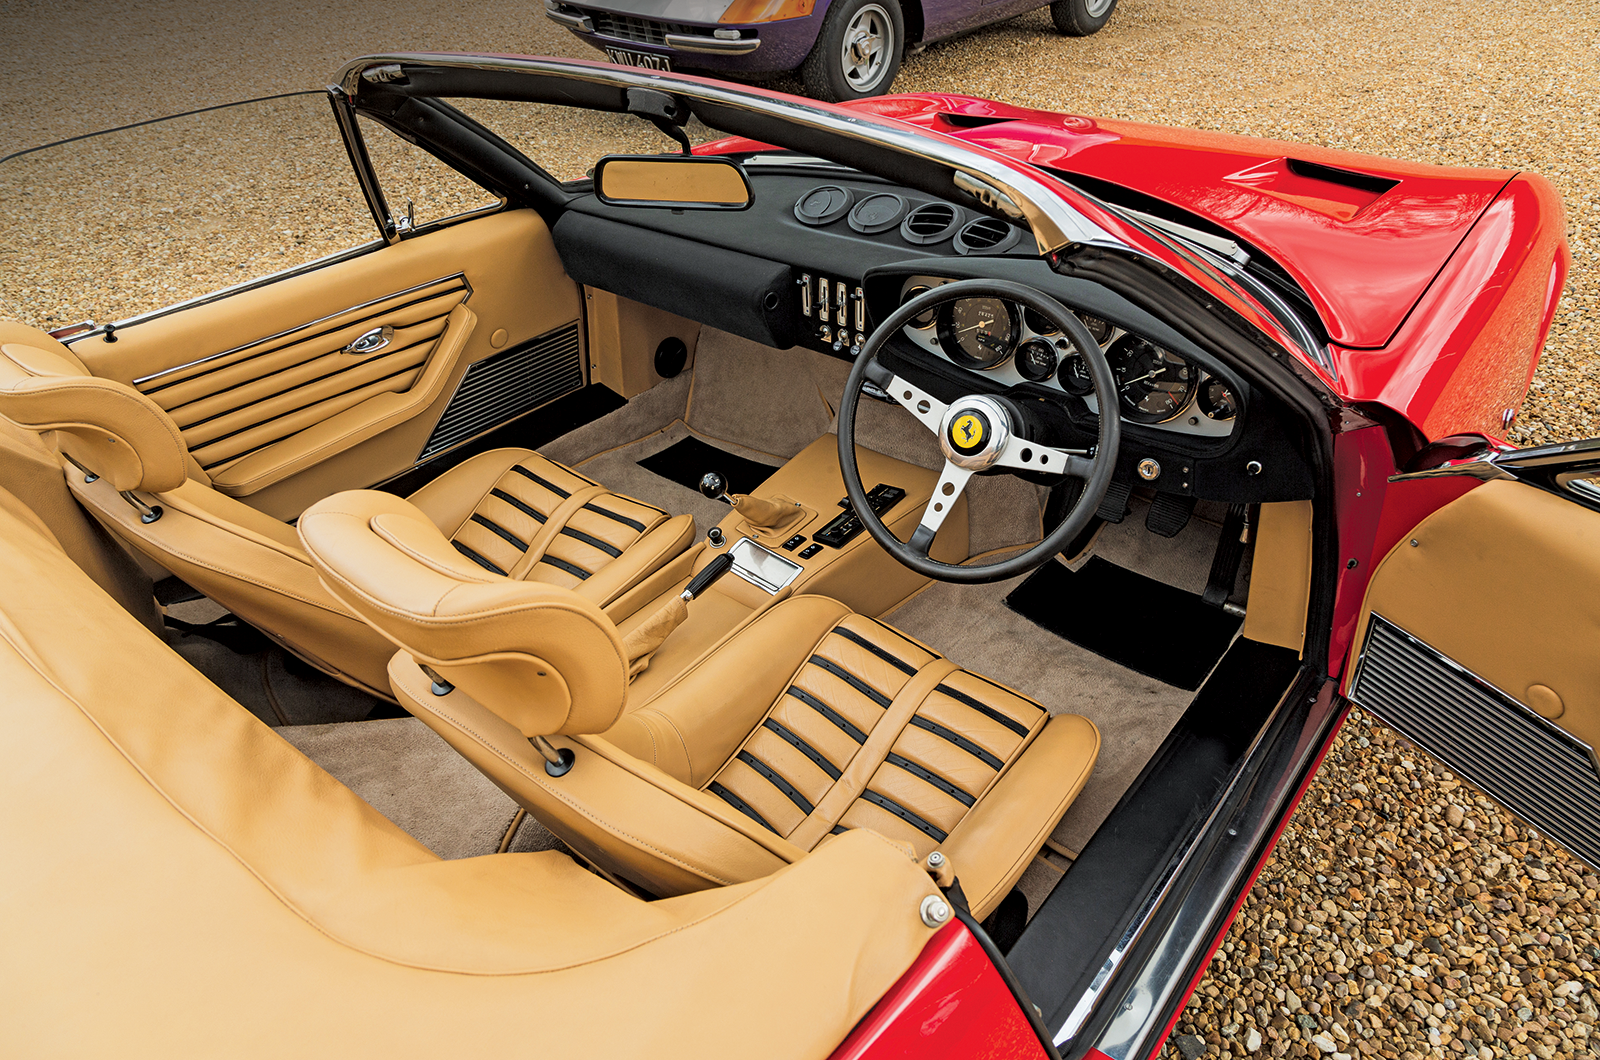 Classic & Sports Car – Ferrari Daytona Berlinetta, Spider and Competizione: kings of the road